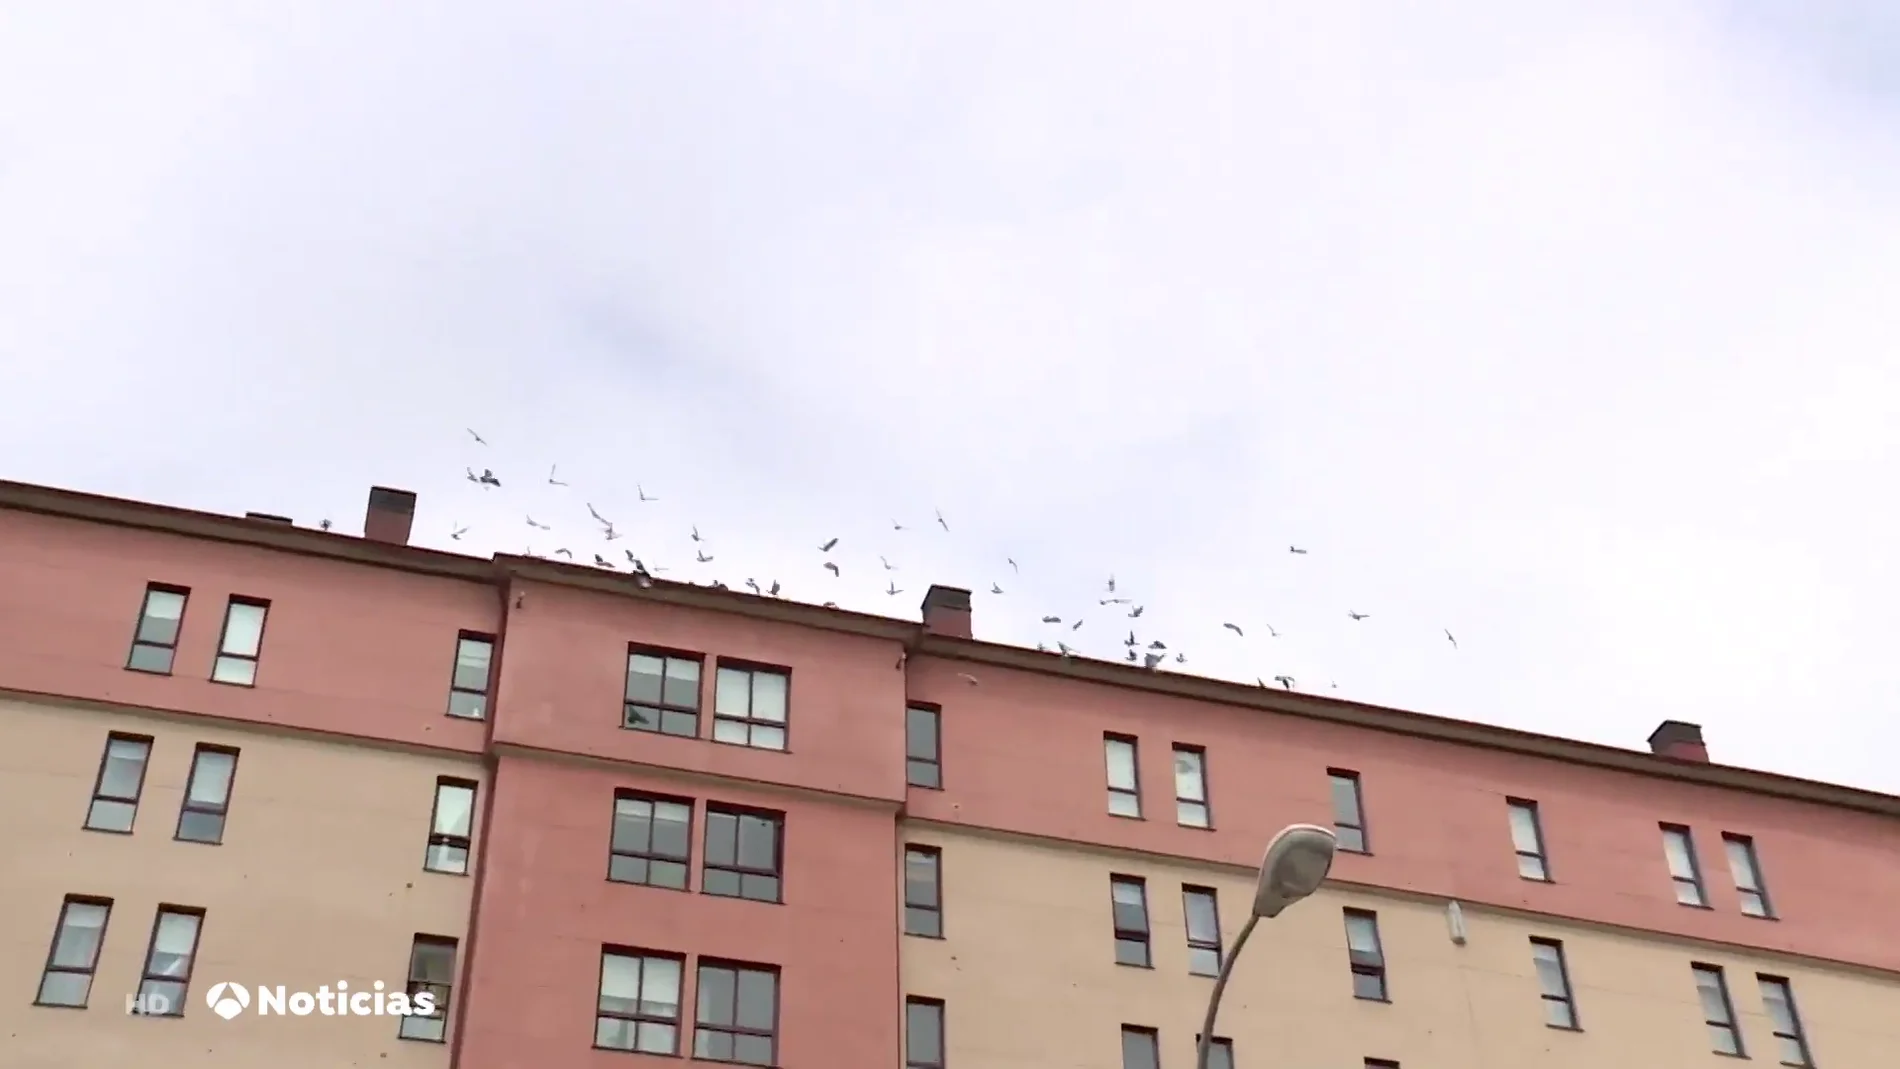 Vecinos de un edificio de Lugo conviven con cientos de palomas en la fachada: "No podemos ni abrir las ventanas"